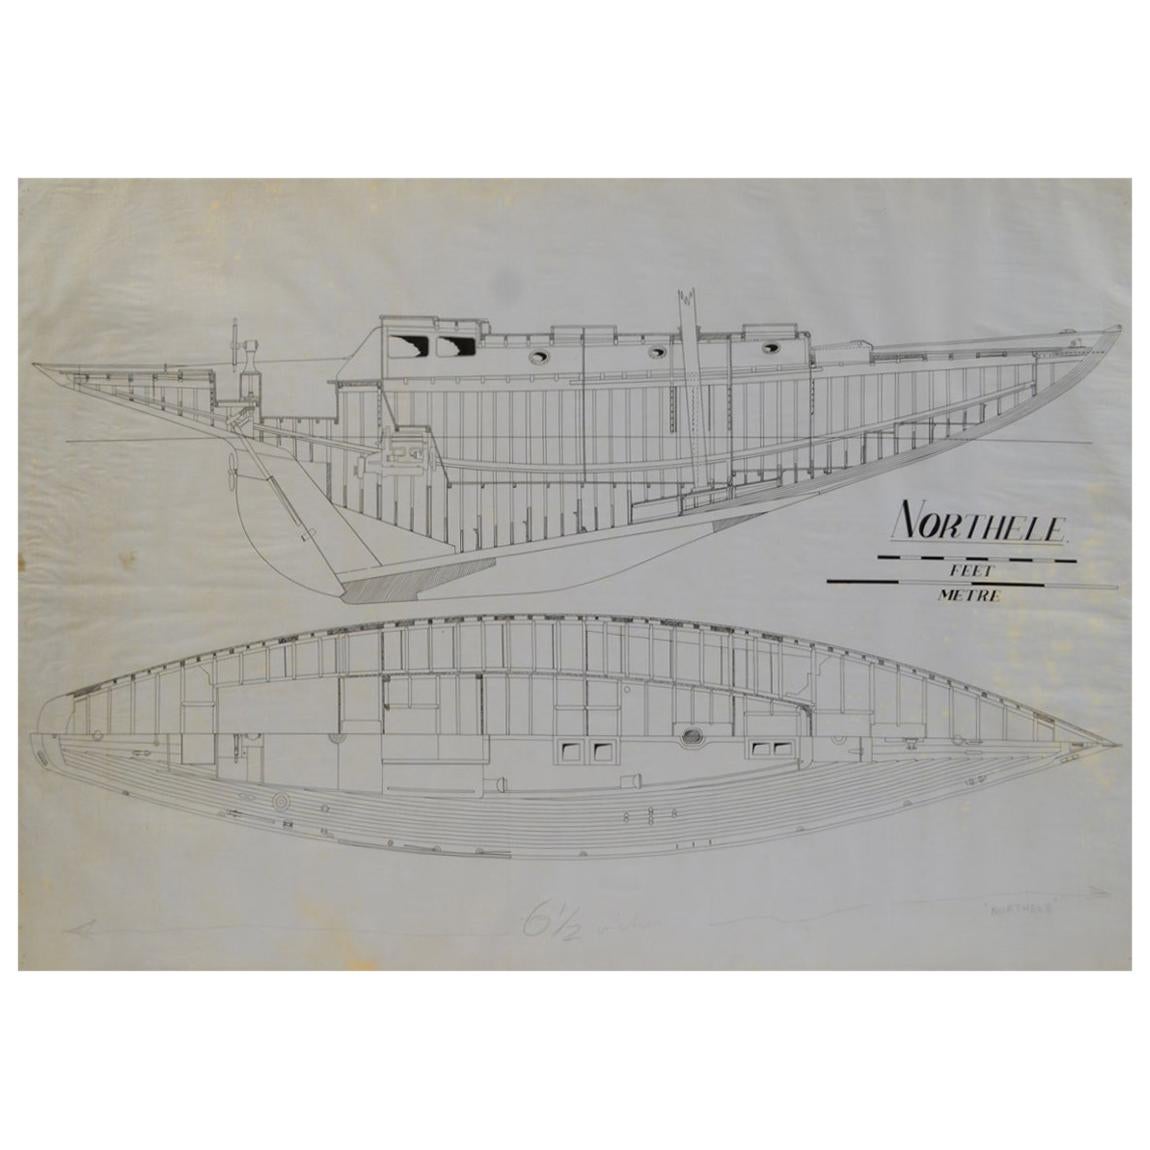 Projet nautique Northele des années 1949 par Berthon Boats archives Uffa Fox